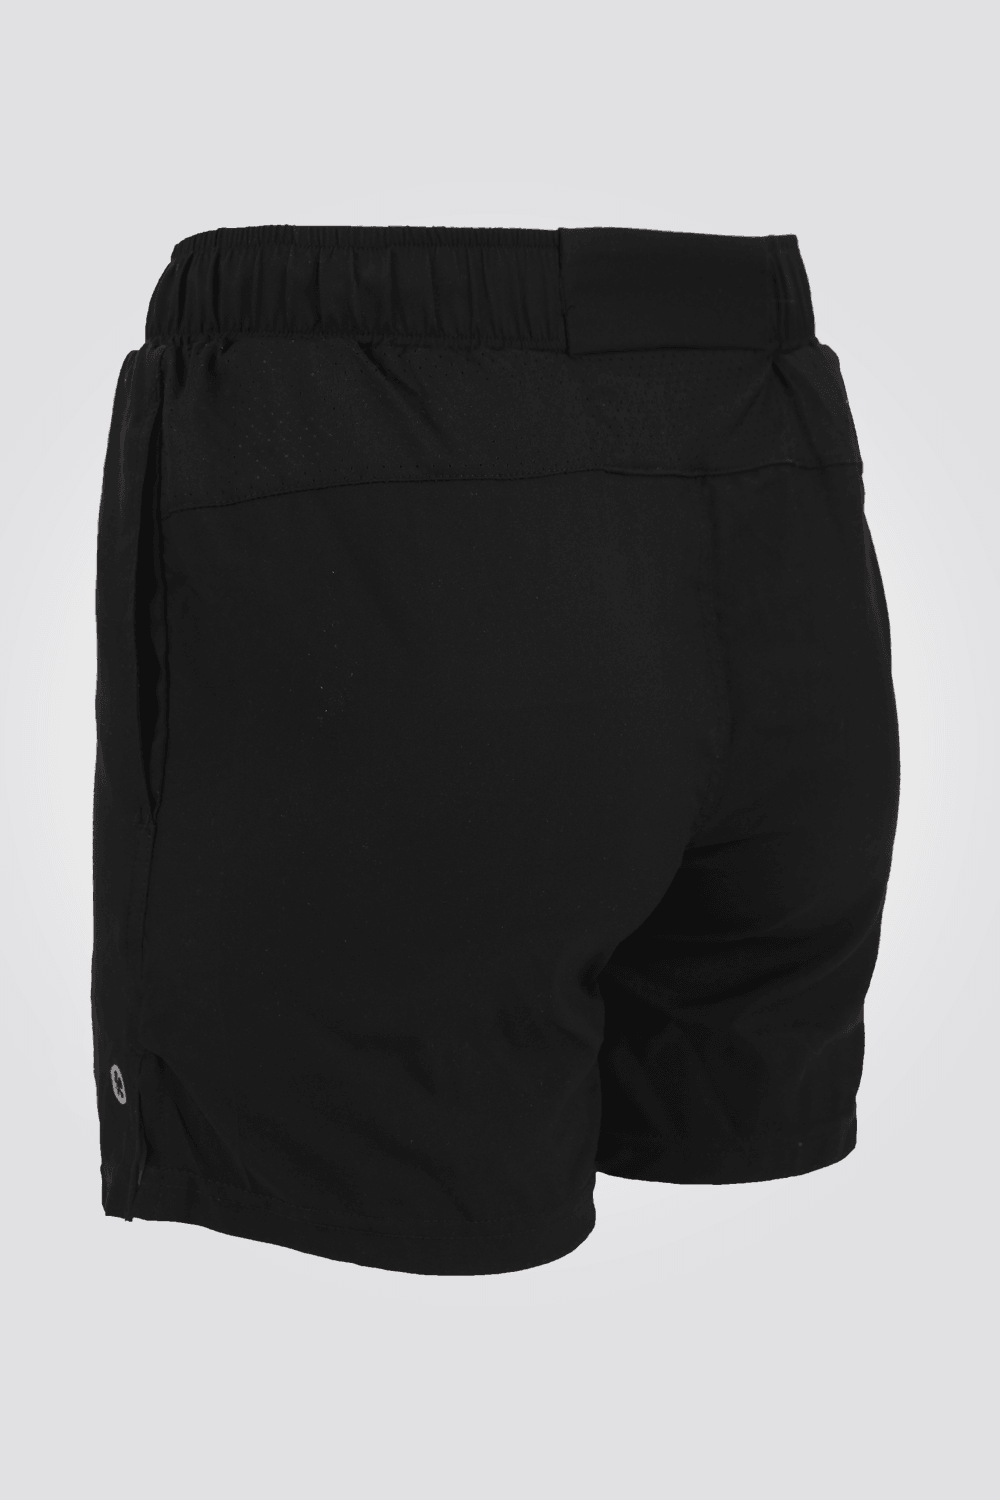 DELTA - מכנסי ריצה קצרים בצבע שחור לגבר - MASHBIR//365